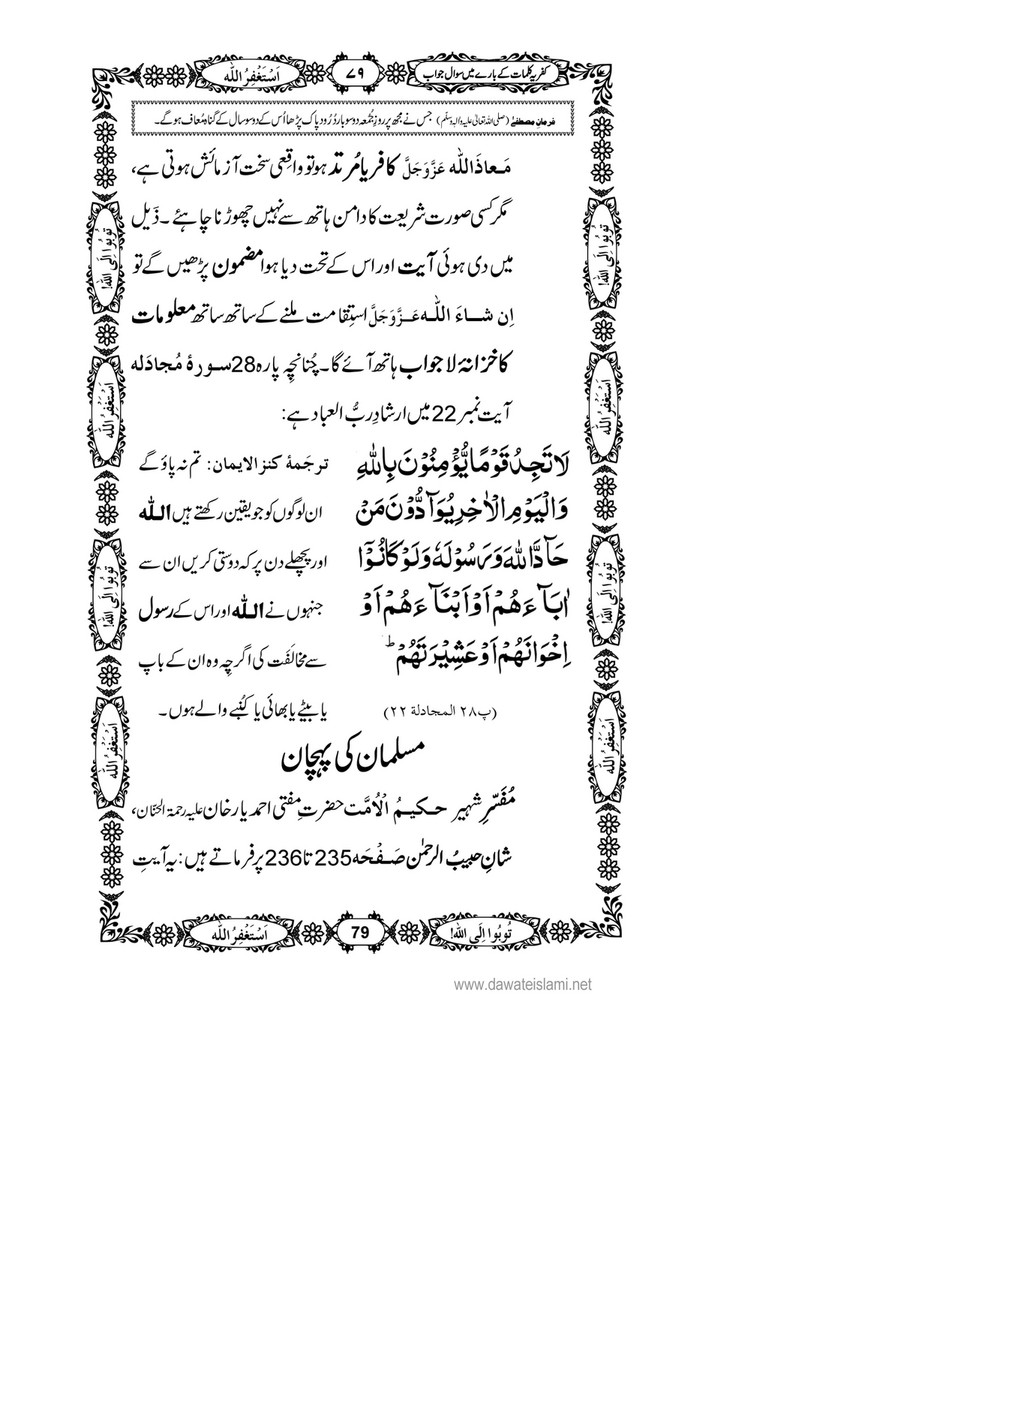 My Publications Kufriya Kalmaat Kay Baray Main Sawal Jawab Page 98 99 Created With Publitas Com